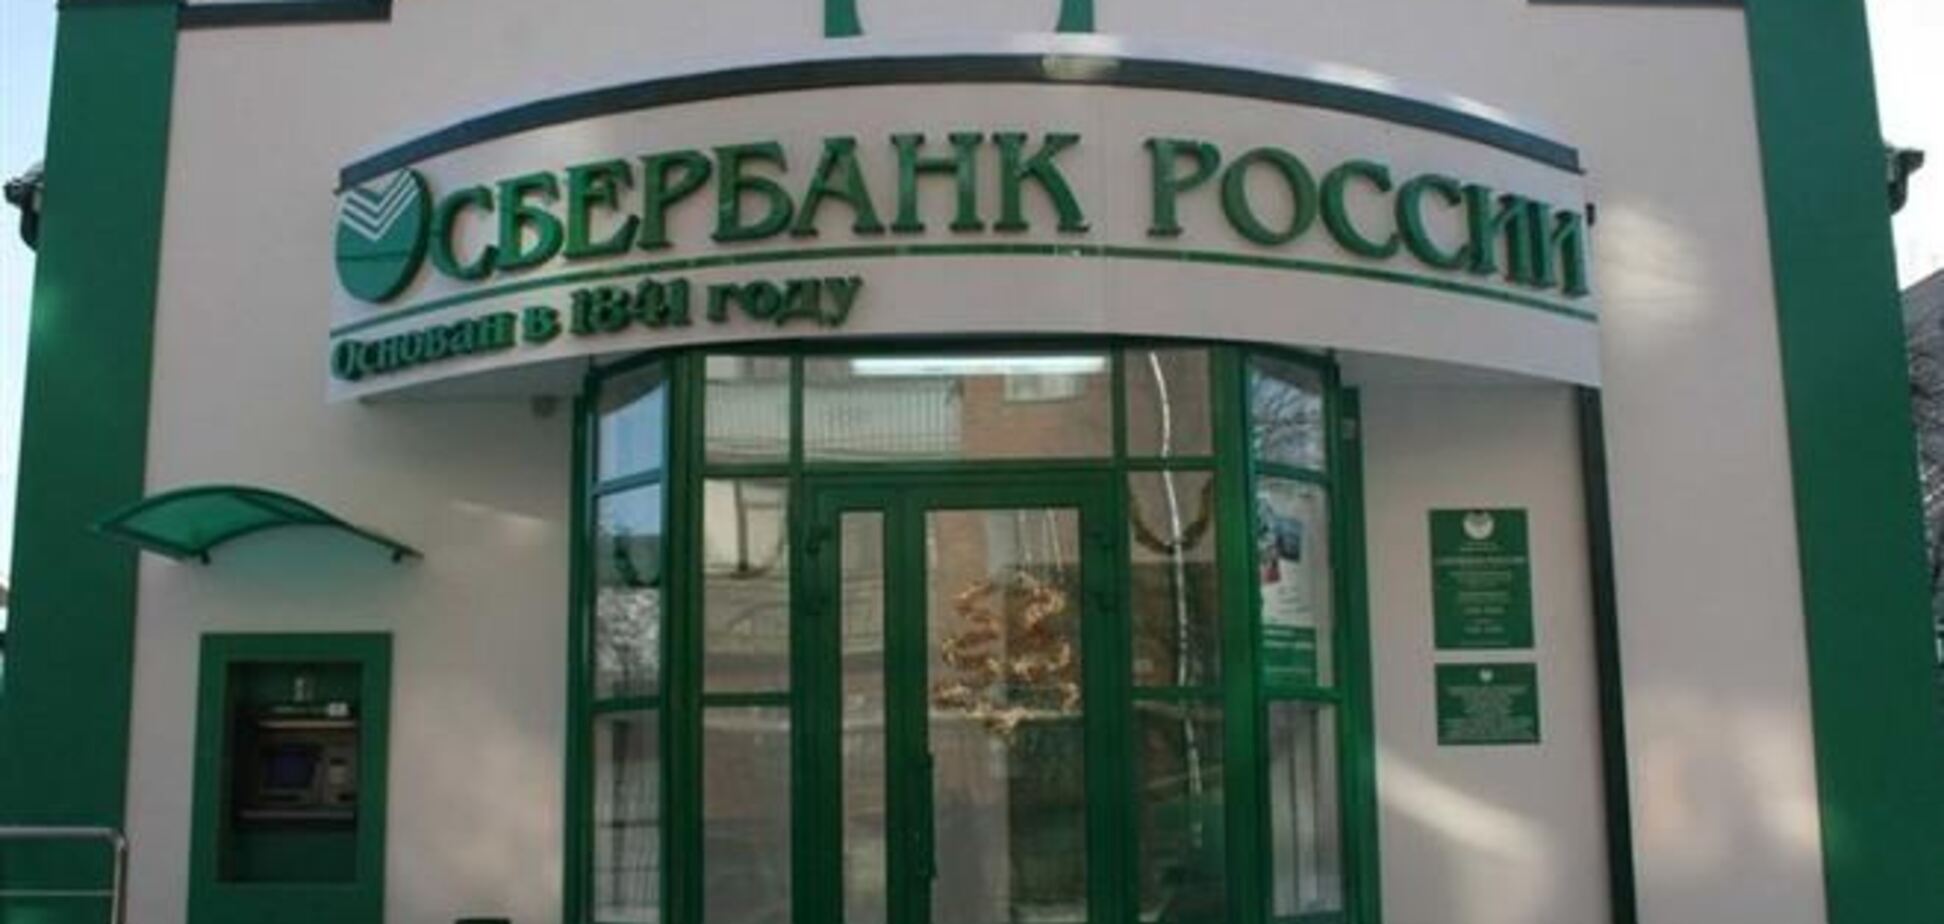 'Дочка' Сбербанка России отрицает наличие против нее уголовного дела за финансирование сепаратизма